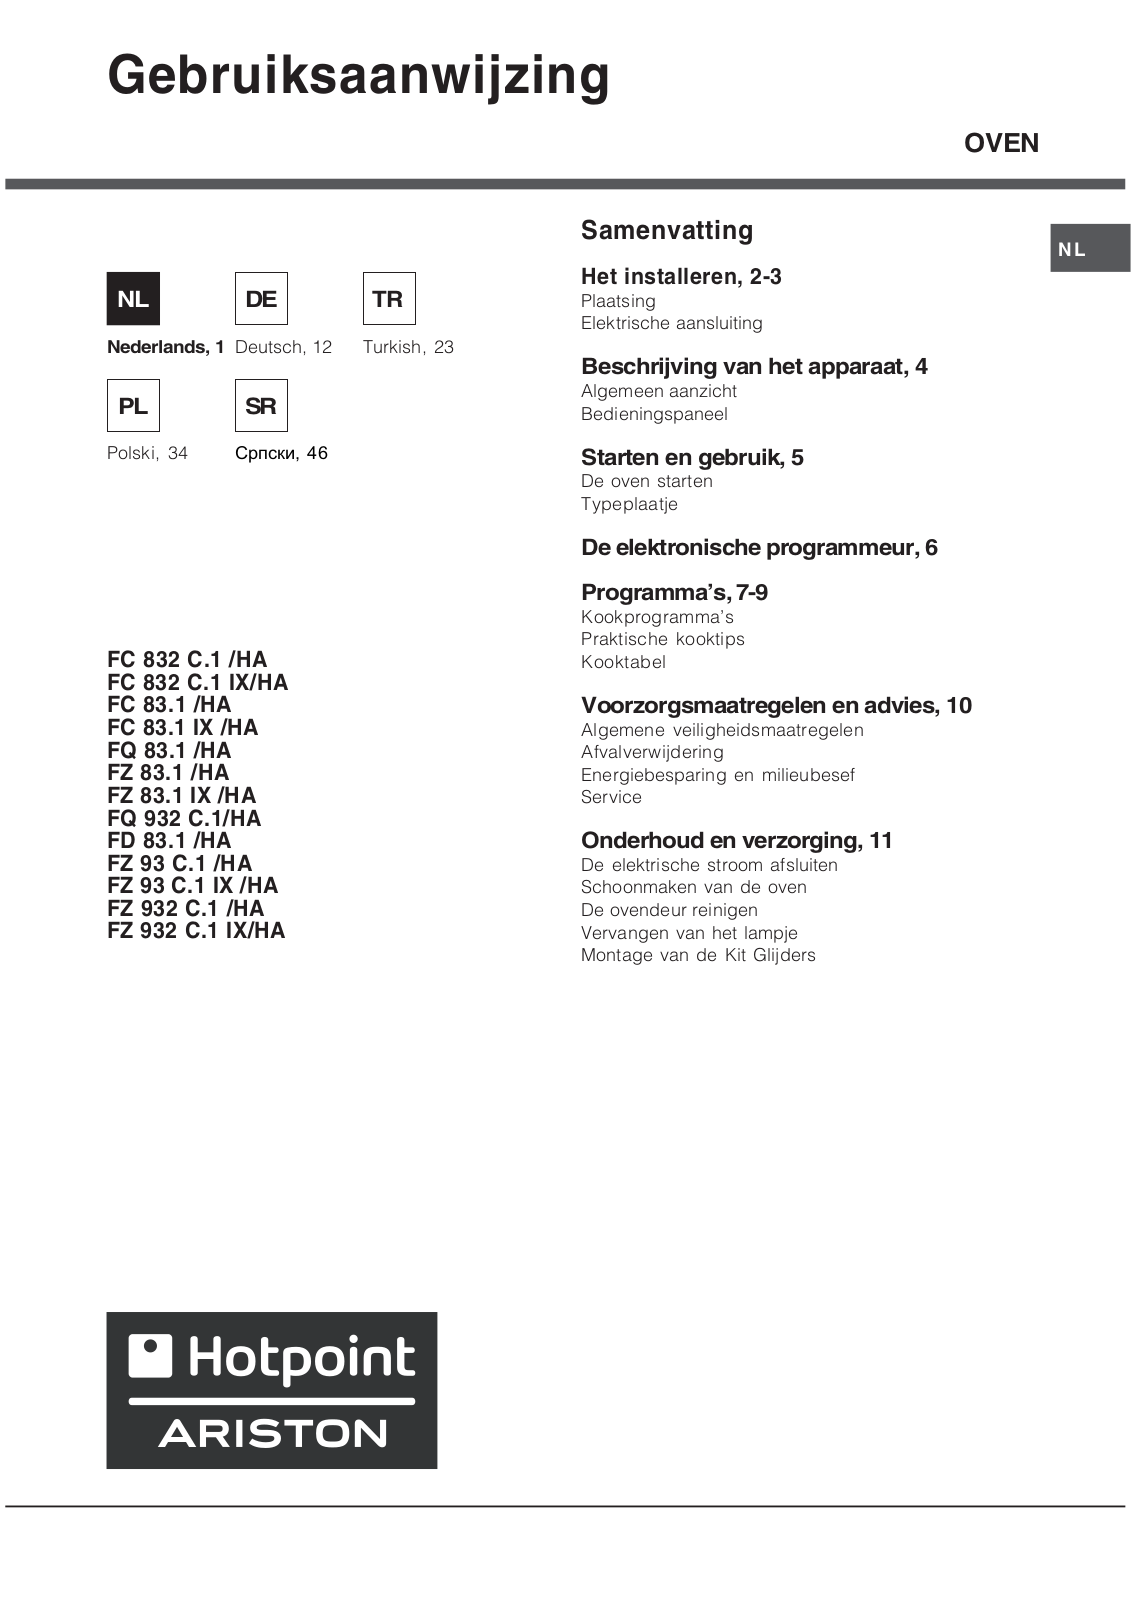 Hotpoint Ariston FC 83.1 IX/HA, FZ 932 C.1 IX/HA, FZ 93 C.1 IX/HA, FQ 83.1, FZ 83.1 IX/HA Manual